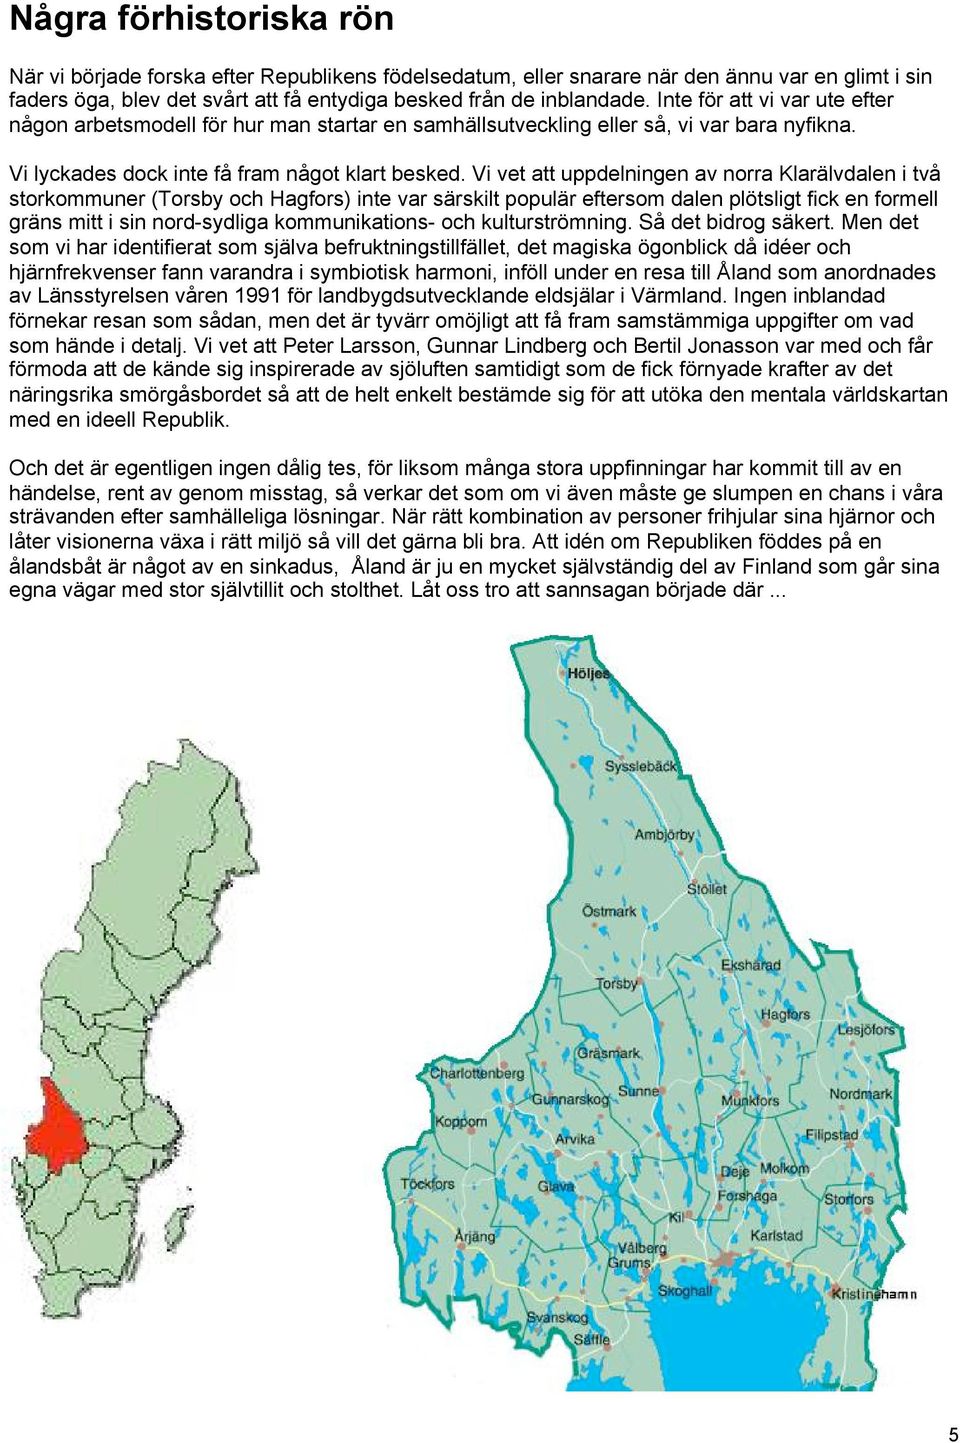 Vi vet att uppdelningen av norra Klarälvdalen i två storkommuner (Torsby och Hagfors) inte var särskilt populär eftersom dalen plötsligt fick en formell gräns mitt i sin nord-sydliga kommunikations-